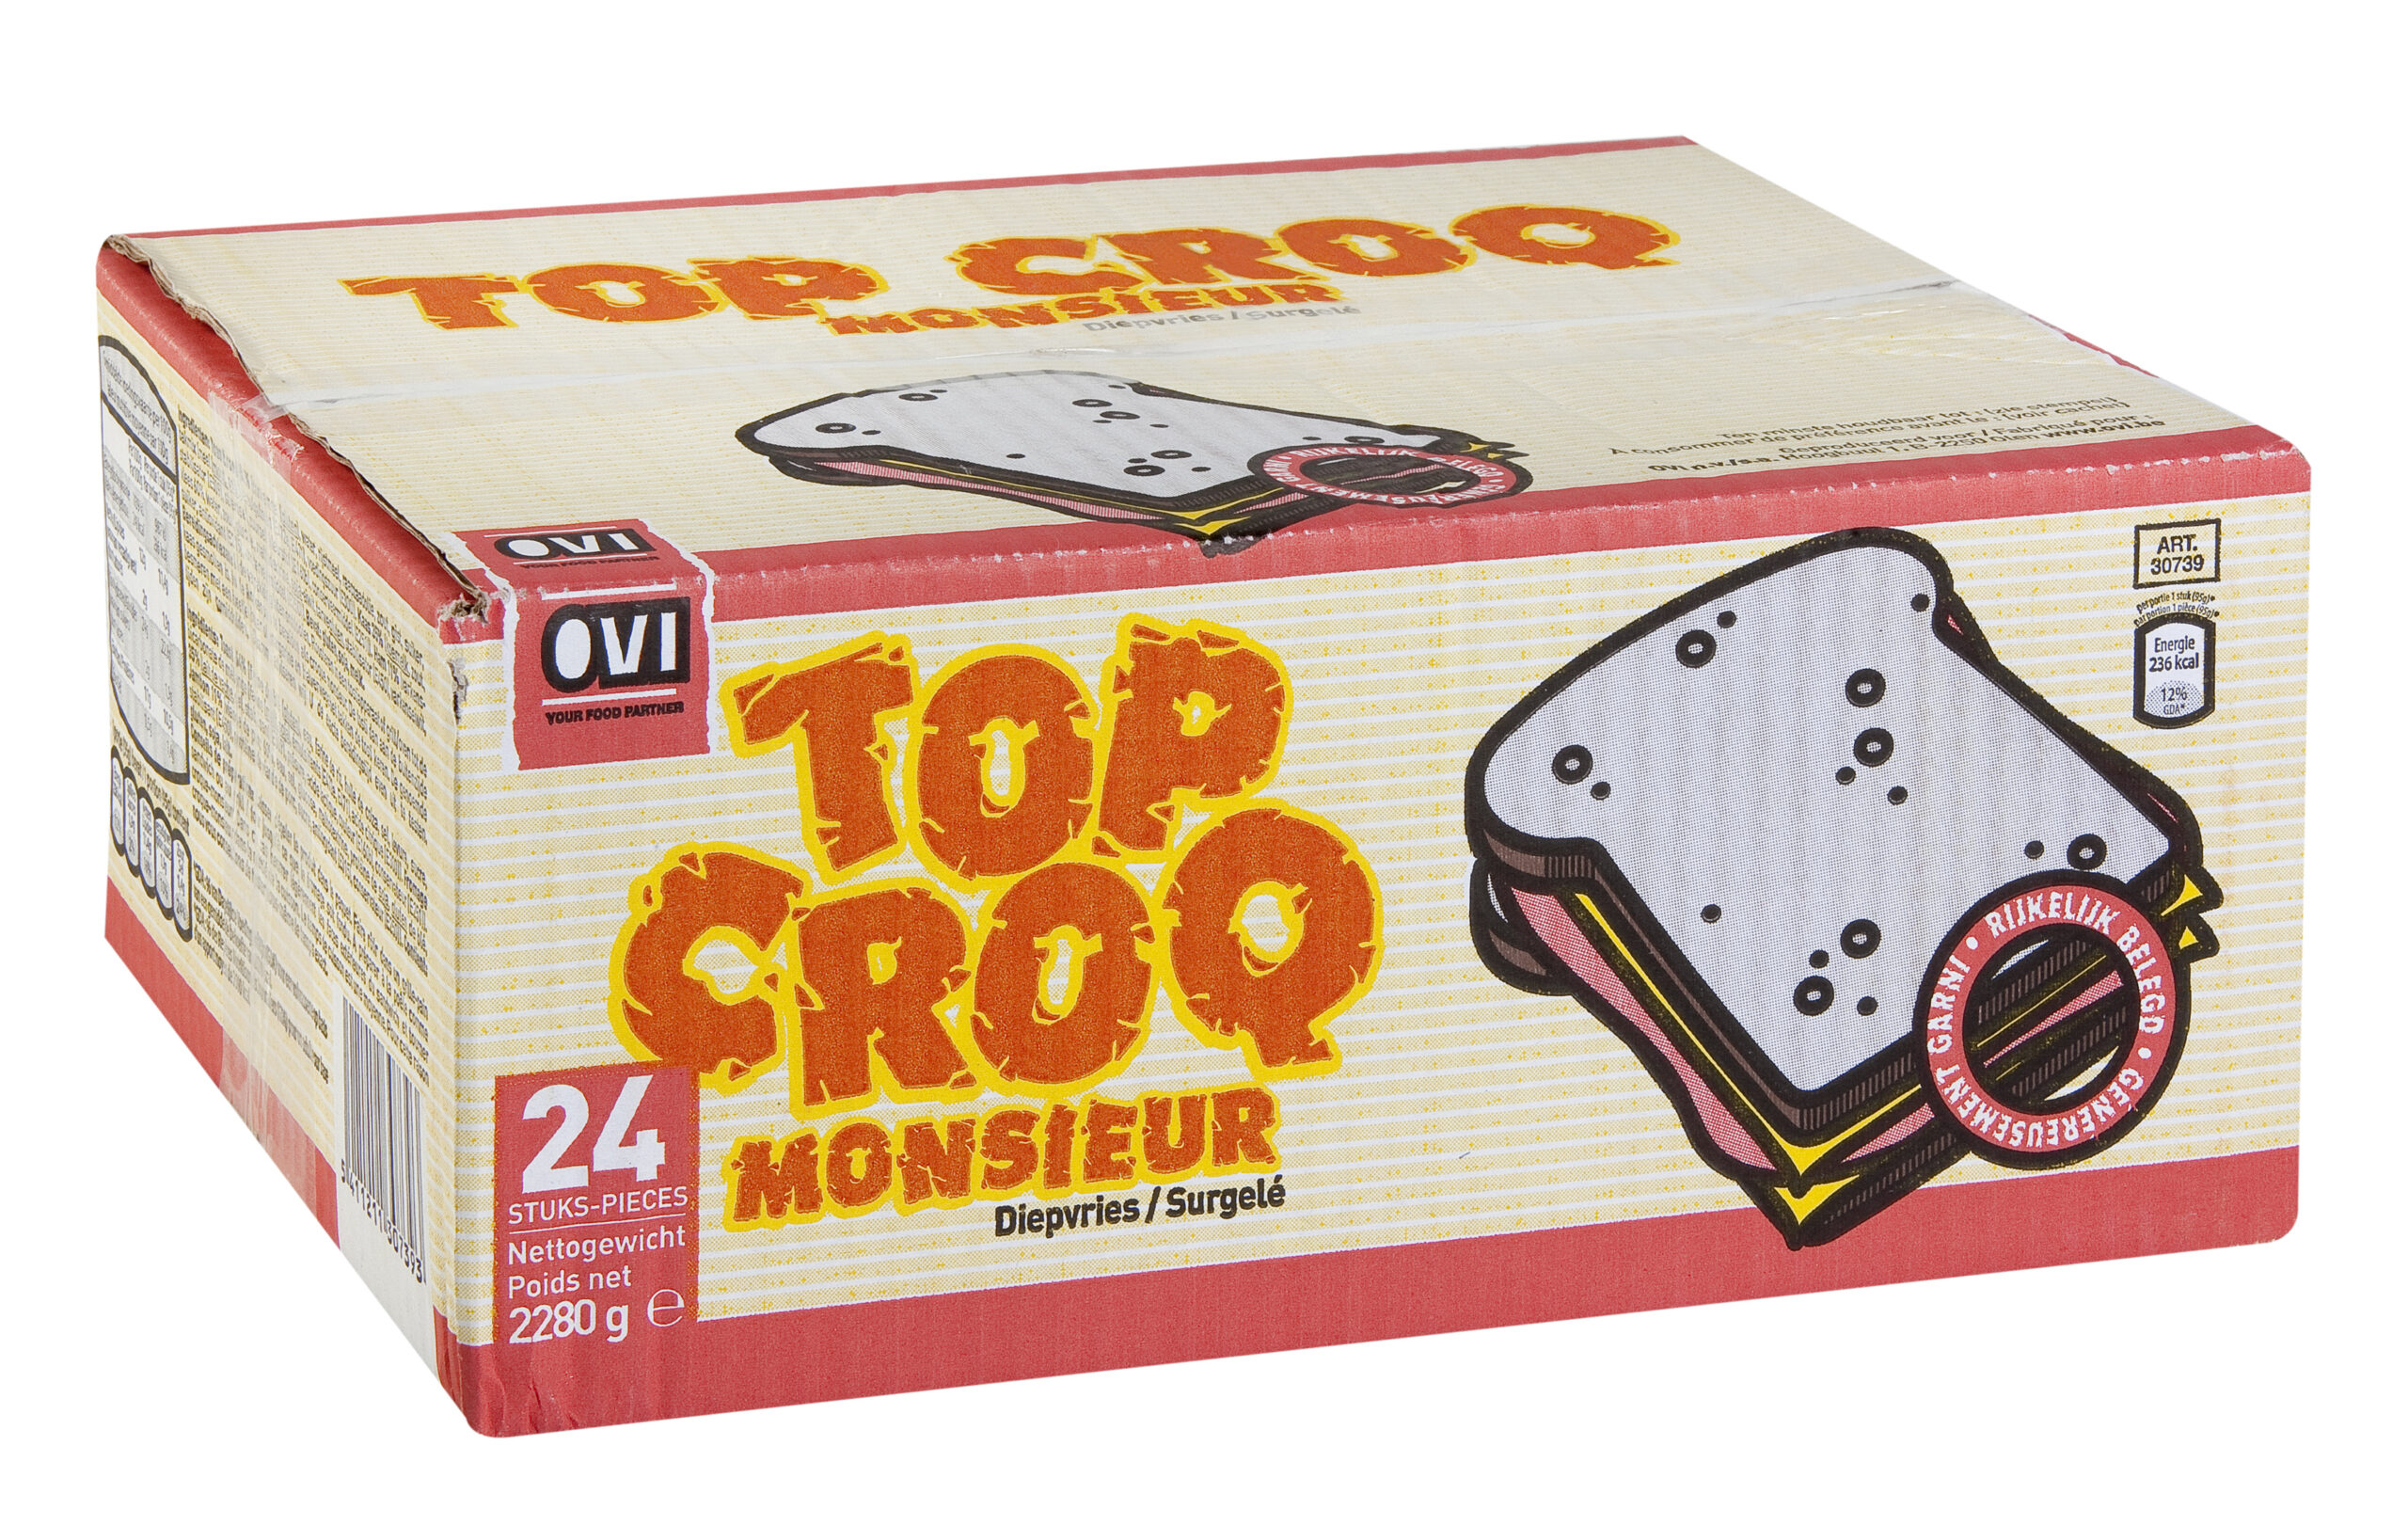 30739 Packshot Top Croq Monsieur 24st